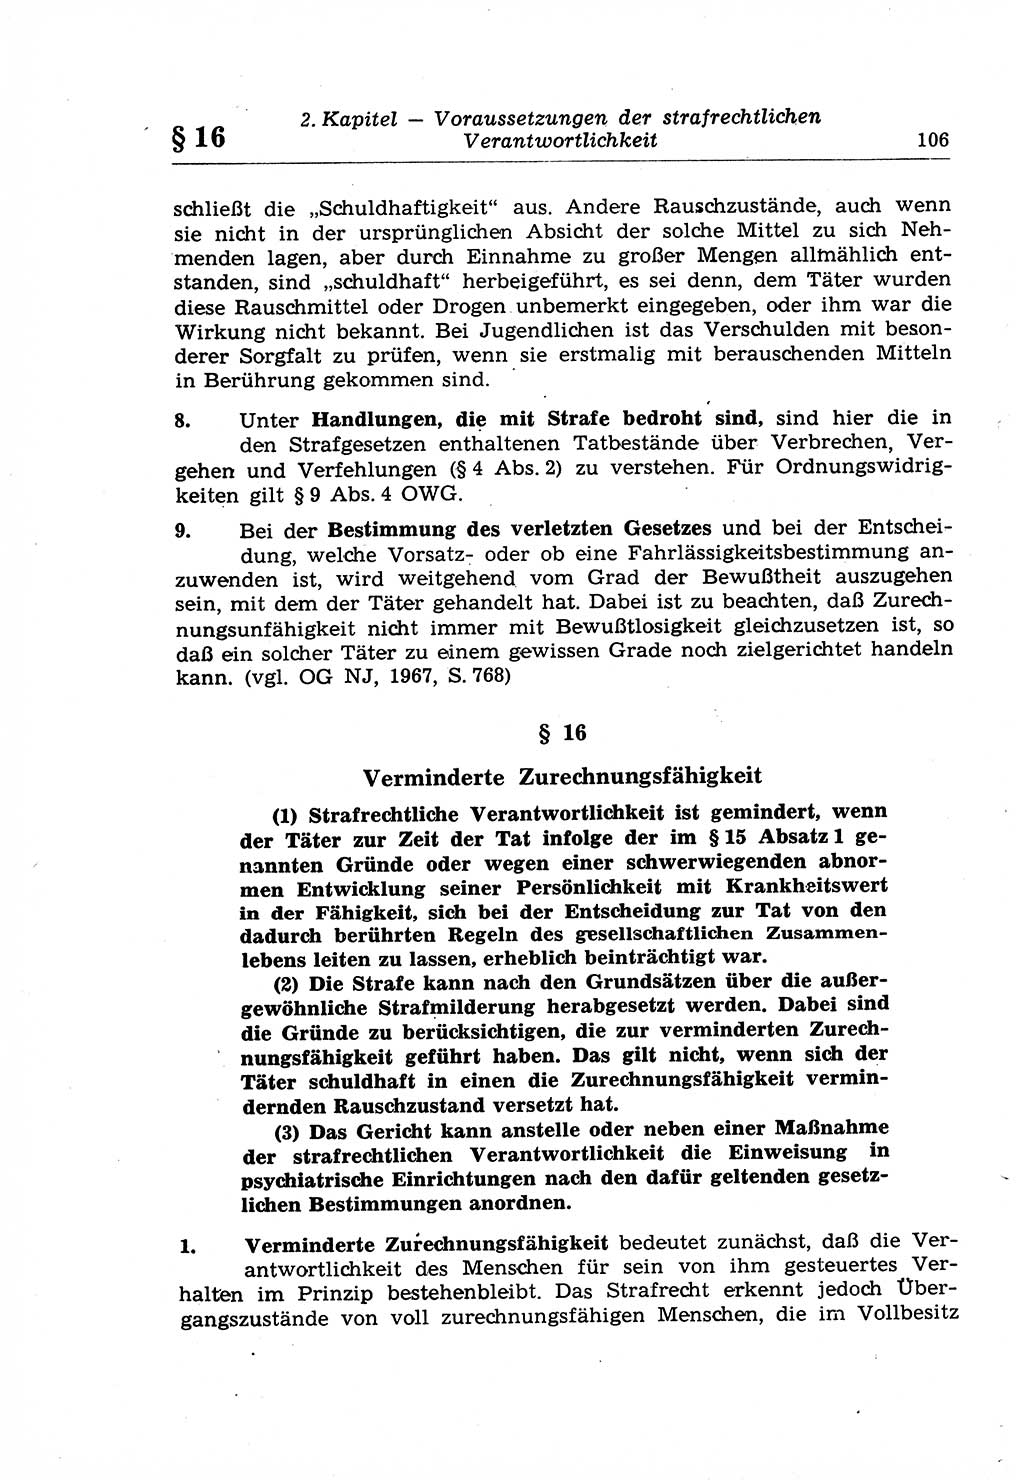 Strafrecht der Deutschen Demokratischen Republik (DDR), Lehrkommentar zum Strafgesetzbuch (StGB), Allgemeiner Teil 1969, Seite 106 (Strafr. DDR Lehrkomm. StGB AT 1969, S. 106)